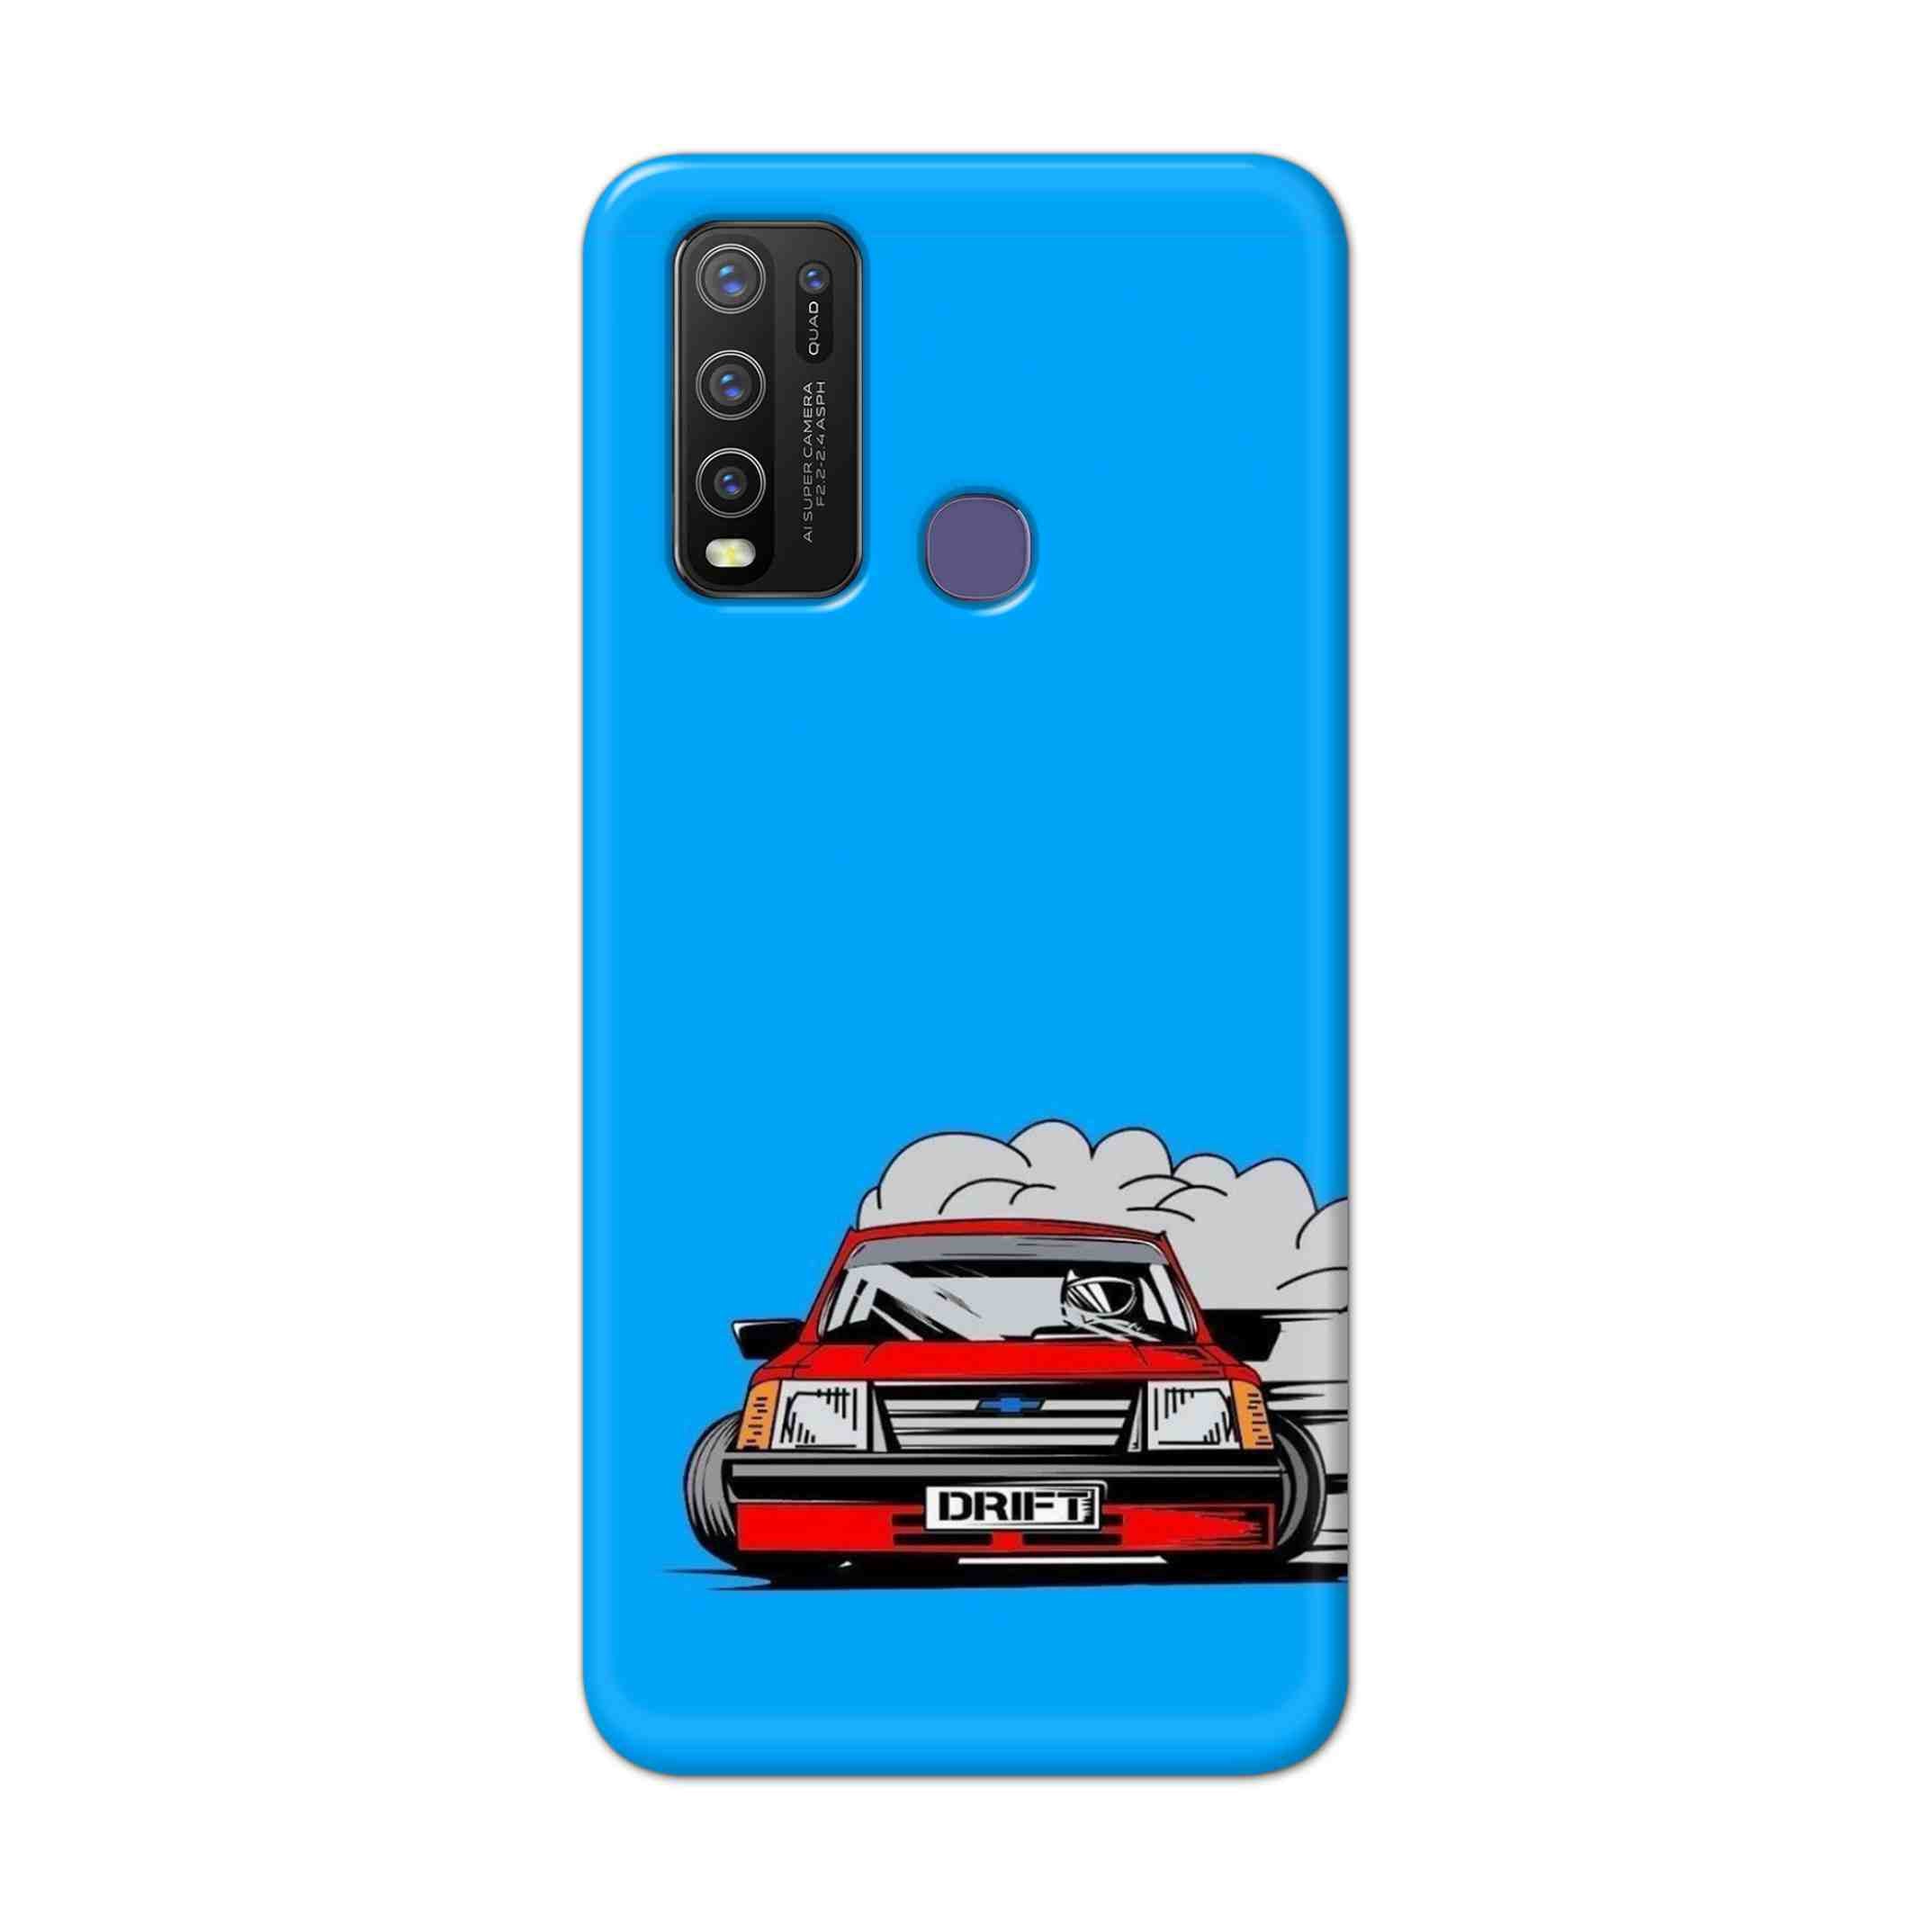 Buy Drift Hard Back Mobile Phone Case Cover For Vivo Y50 Online